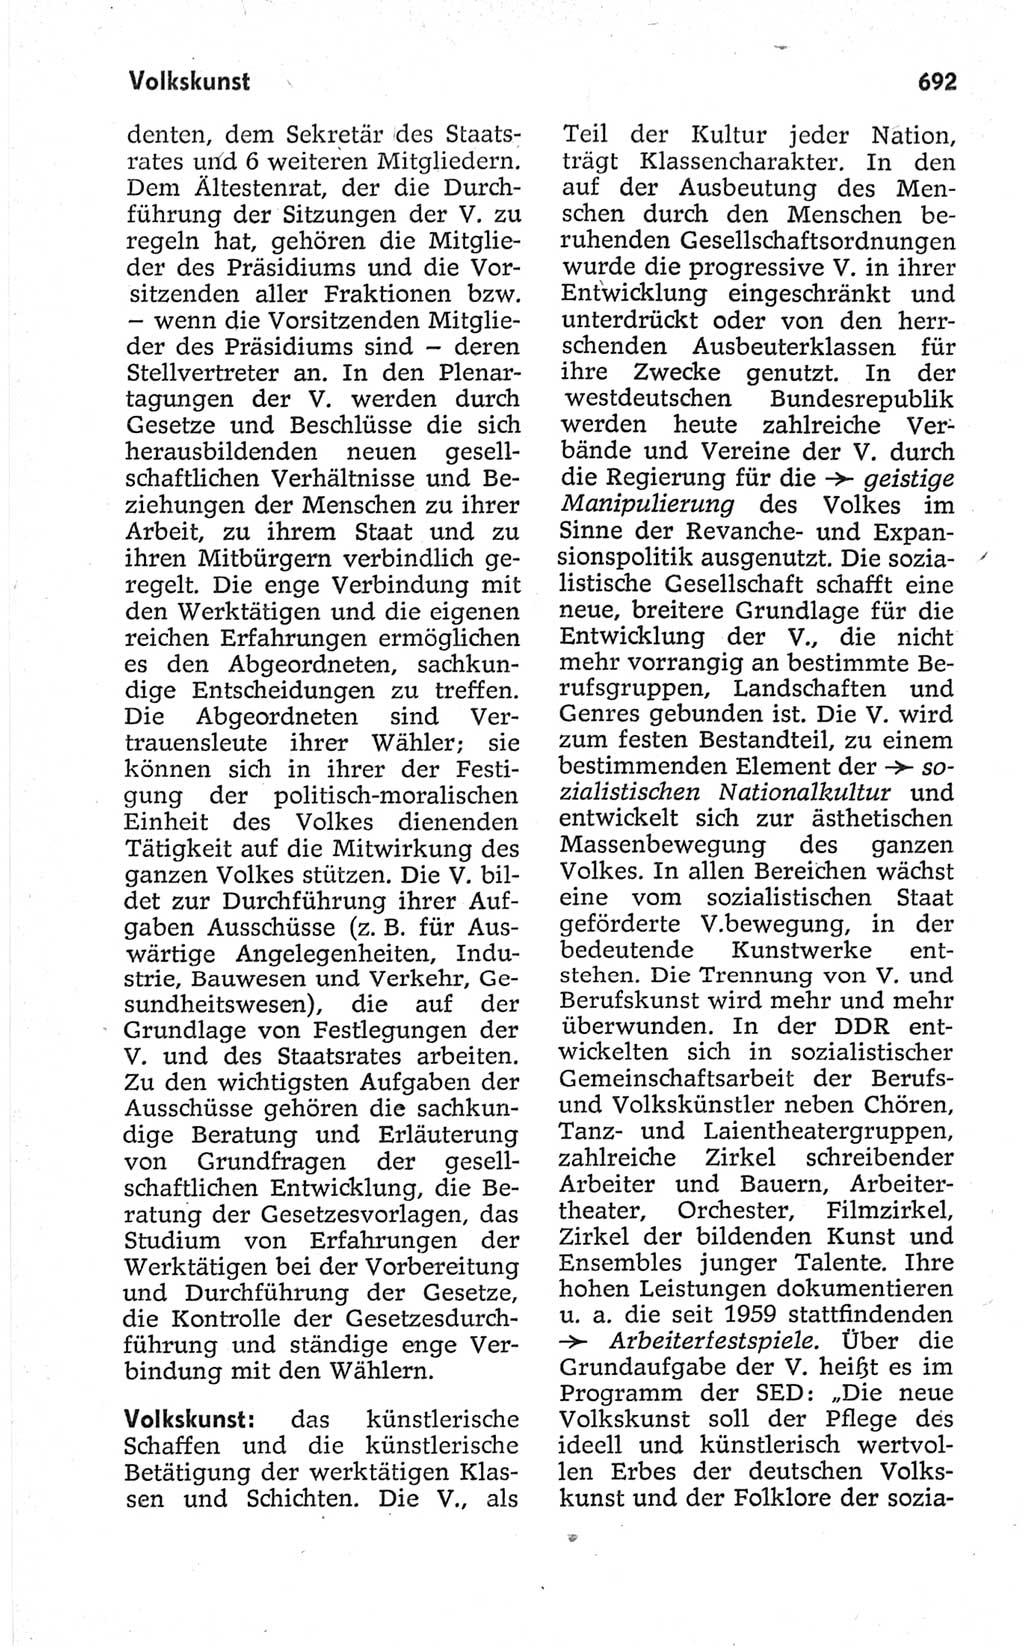 Kleines politisches Wörterbuch [Deutsche Demokratische Republik (DDR)] 1967, Seite 692 (Kl. pol. Wb. DDR 1967, S. 692)